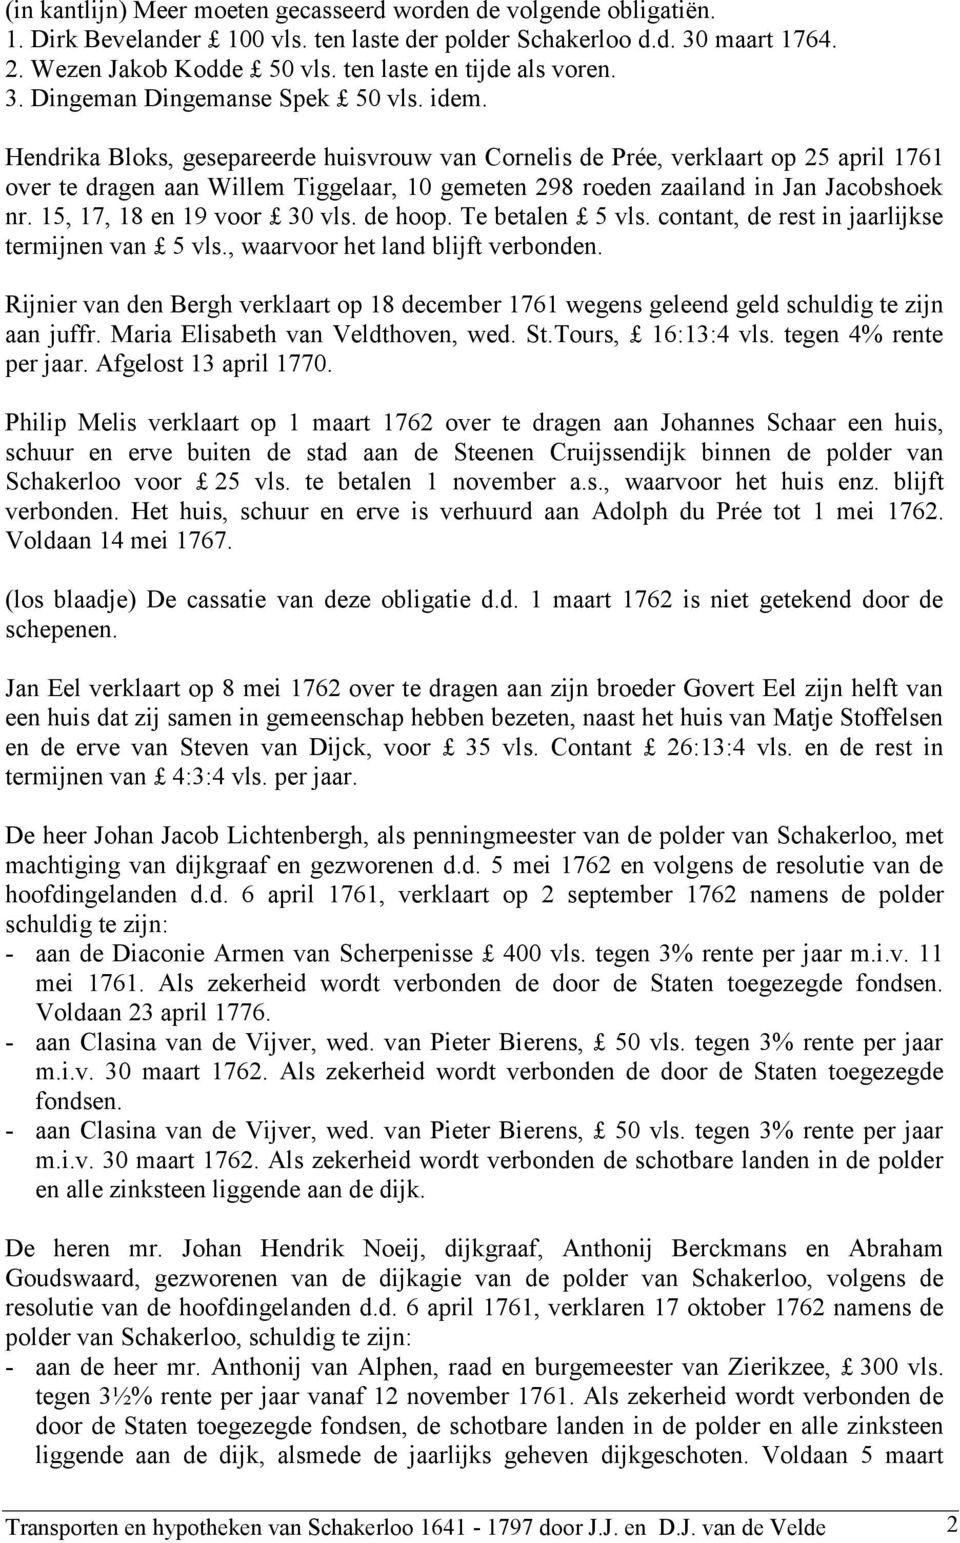 Hendrika Bloks, gesepareerde huisvrouw van Cornelis de Prée, verklaart op 25 april 1761 over te dragen aan Willem Tiggelaar, 10 gemeten 298 roeden zaailand in Jan Jacobshoek nr.